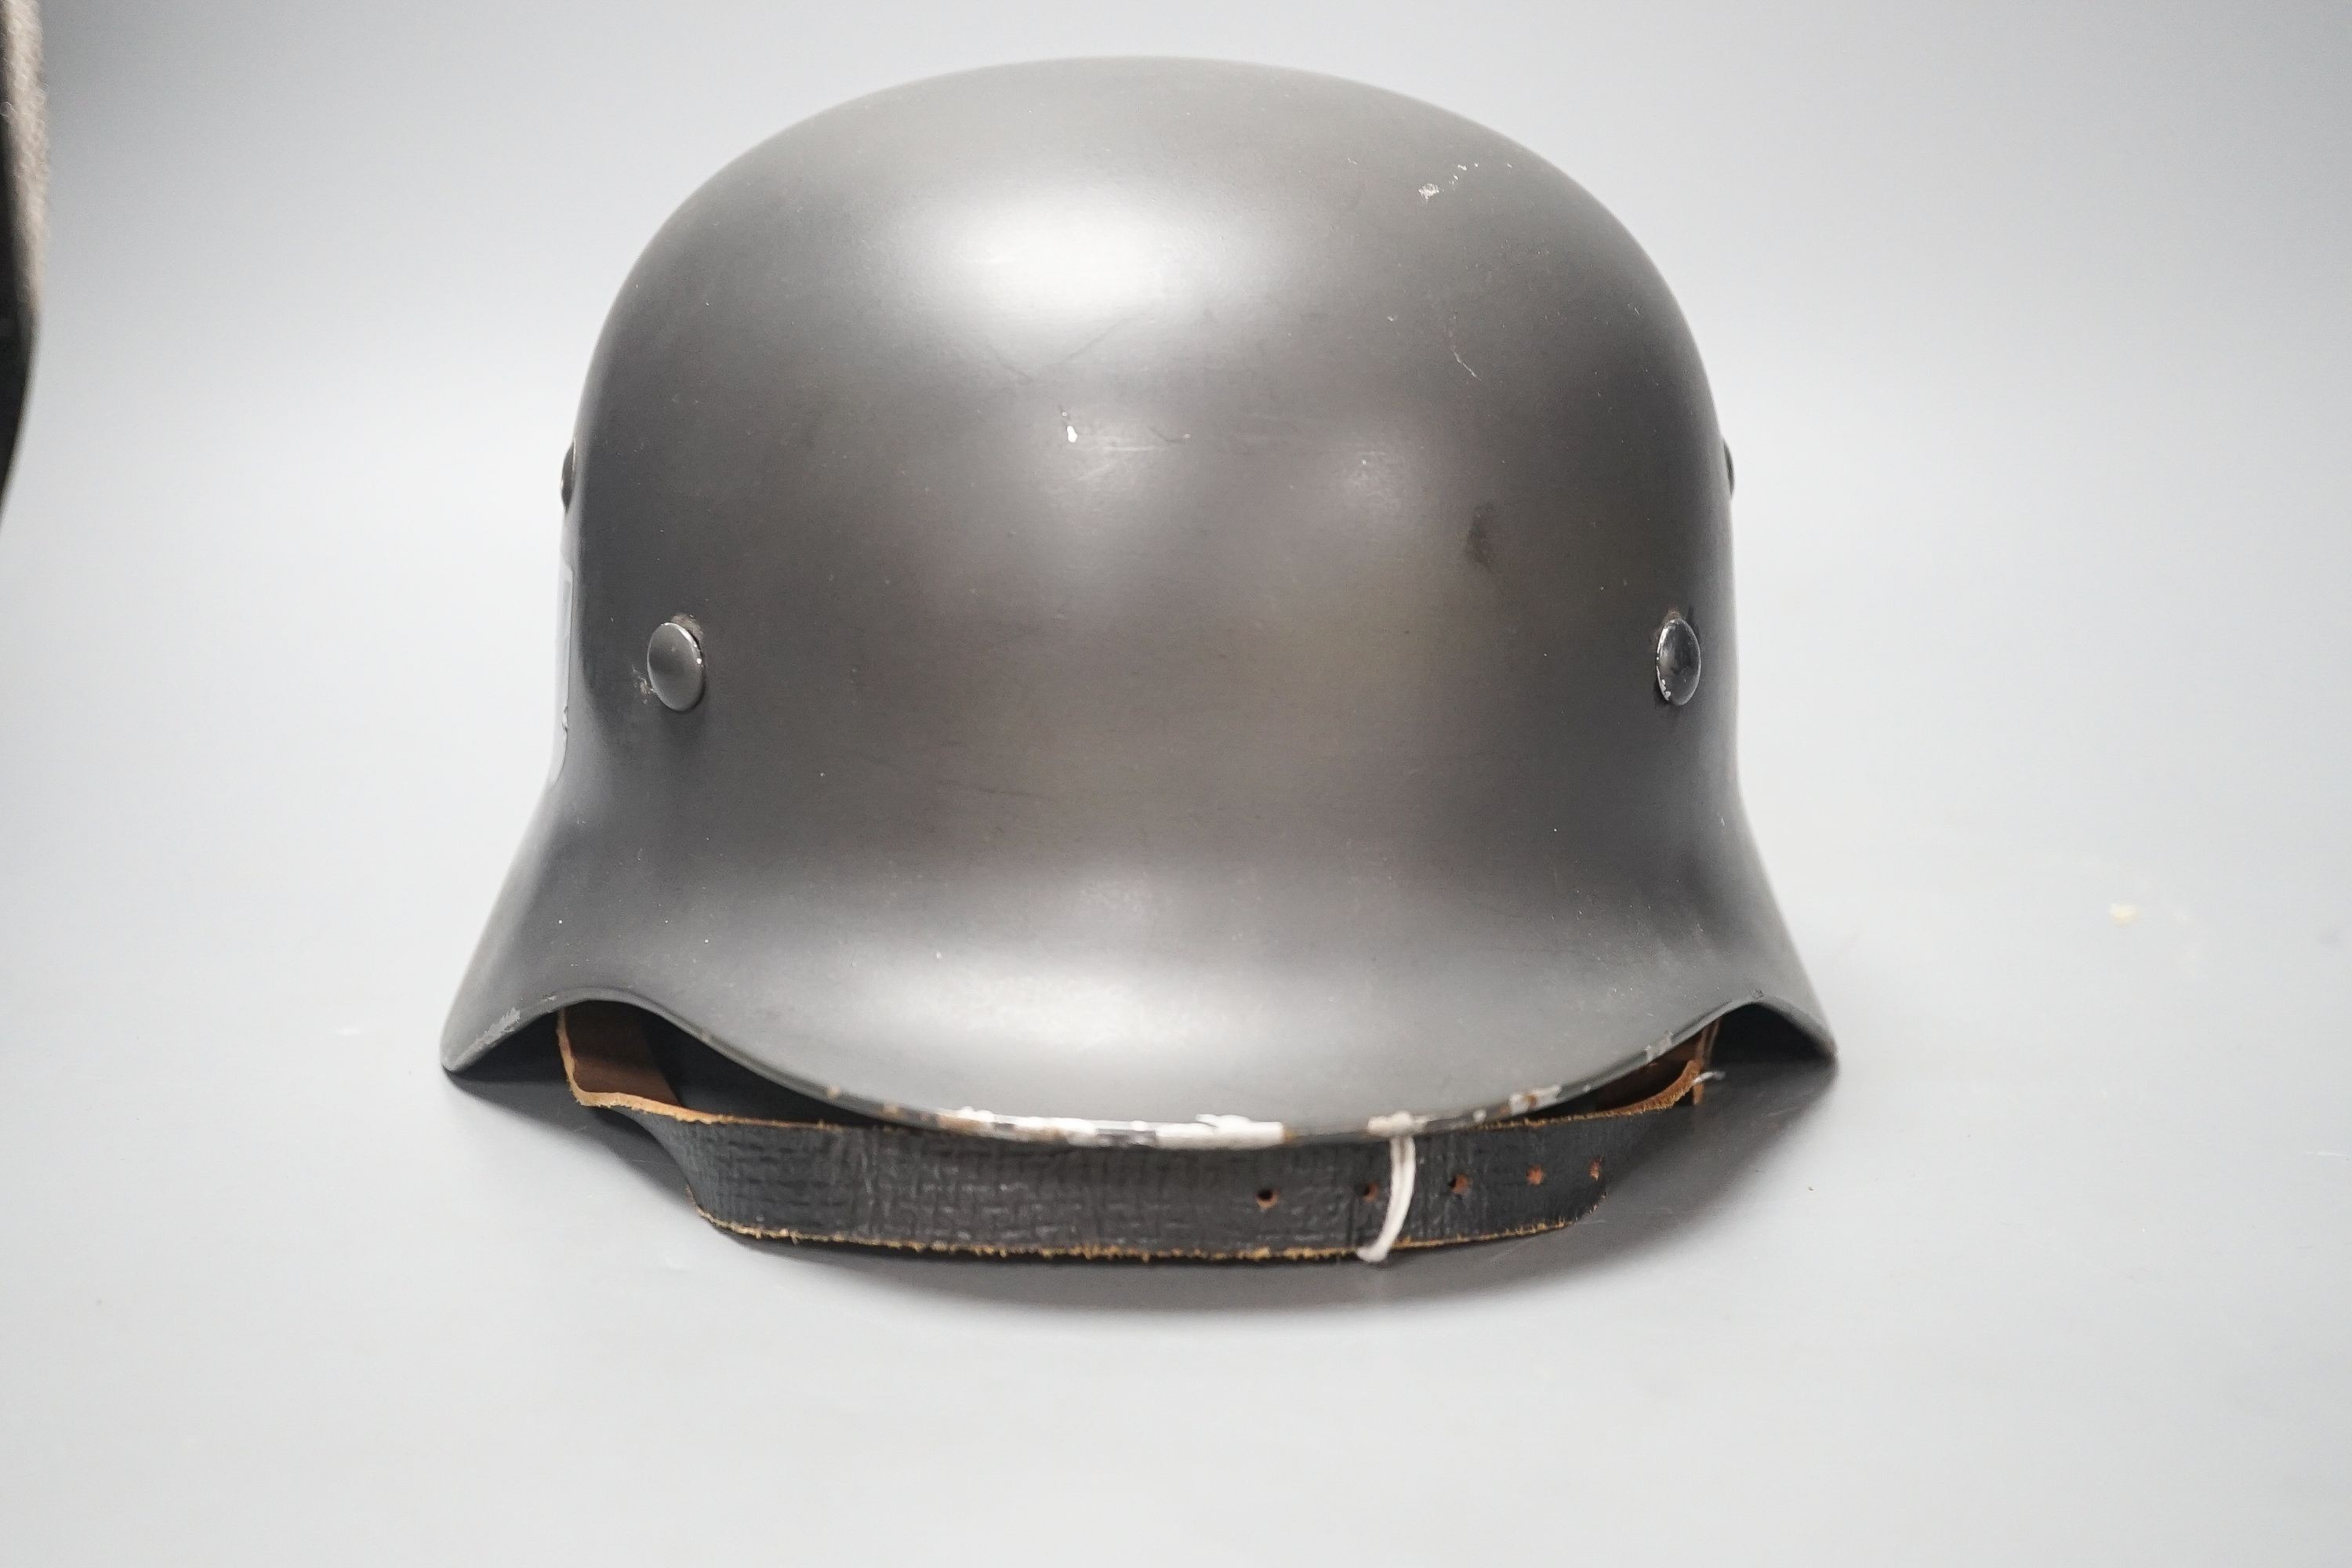 A replica WWII German steel helmet